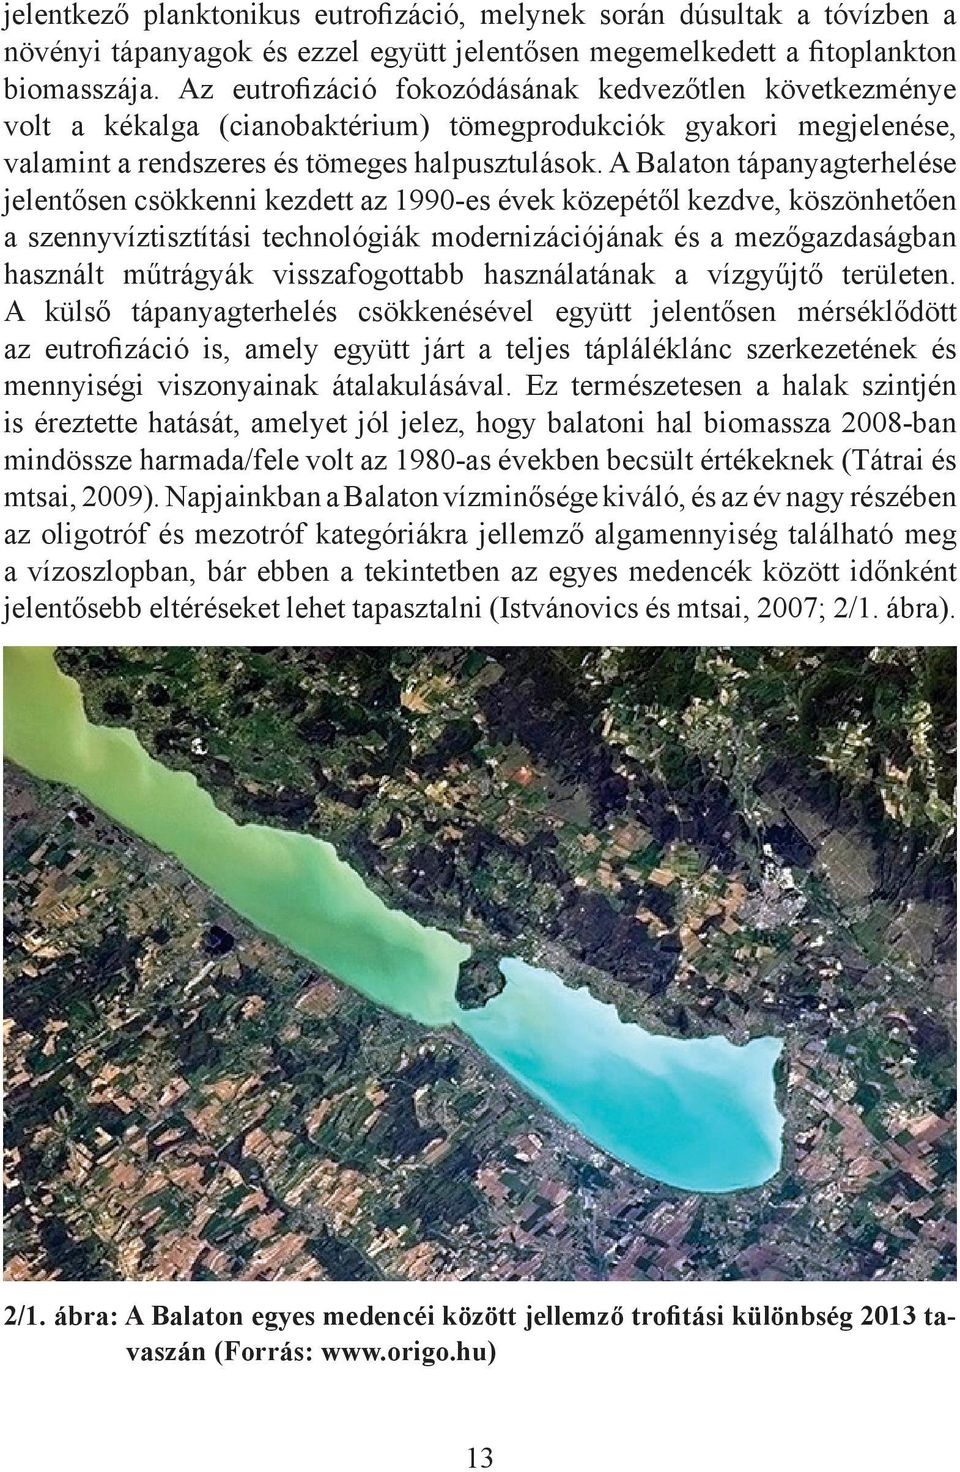 A Balaton tápanyagterhelése jelentősen csökkenni kezdett az 1990-es évek közepétől kezdve, köszönhetően a szennyvíztisztítási technológiák modernizációjának és a mezőgazdaságban használt műtrágyák